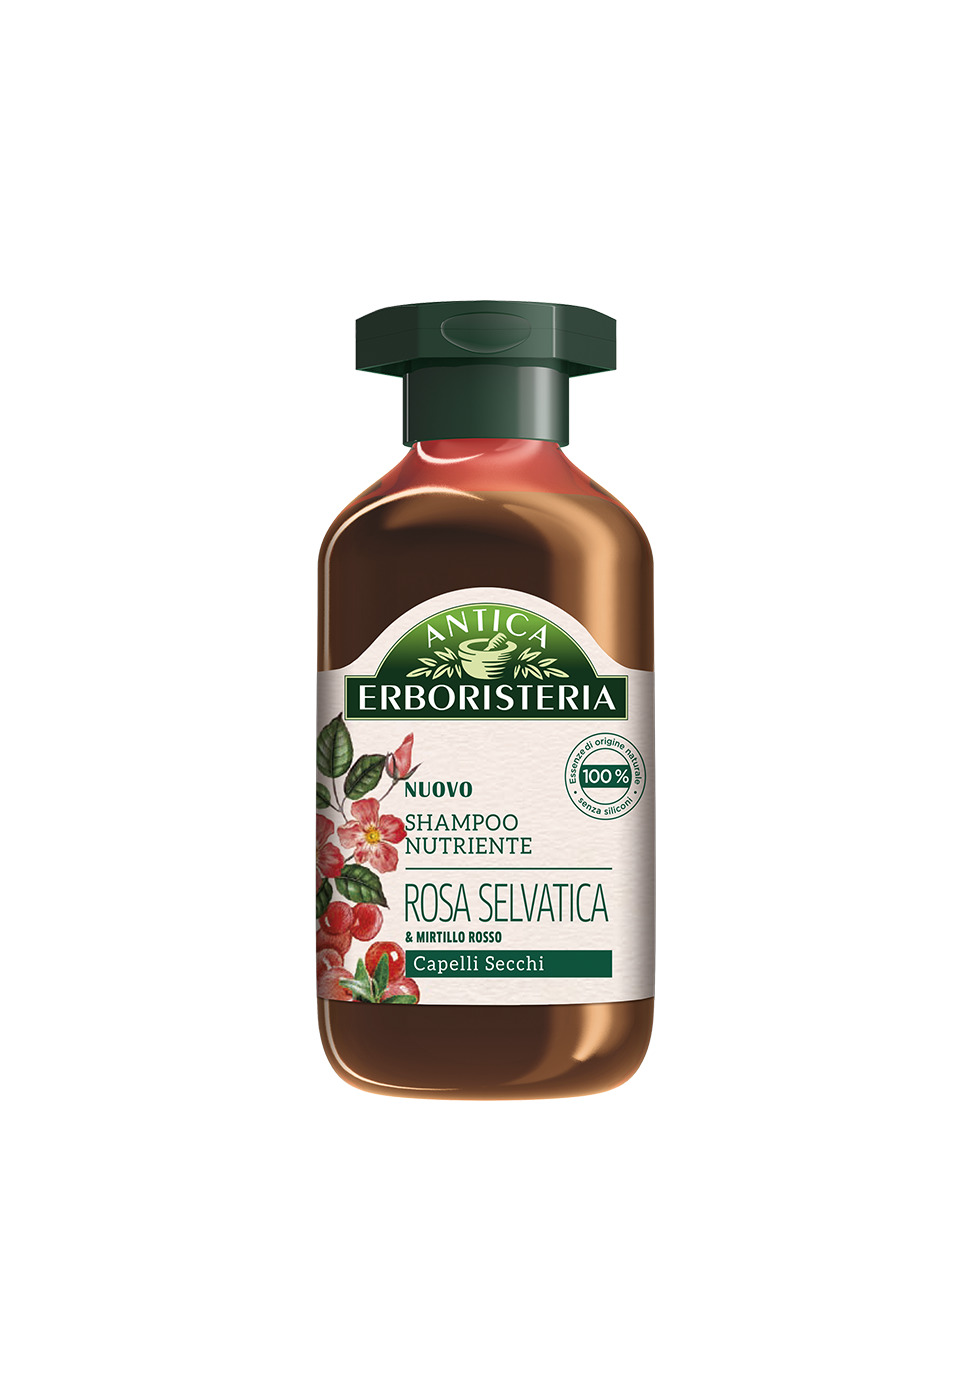 ANTICA ERBORISTERIA Shampoo Nutriente Rosa Selvatica Capelli Secchi 250 ml